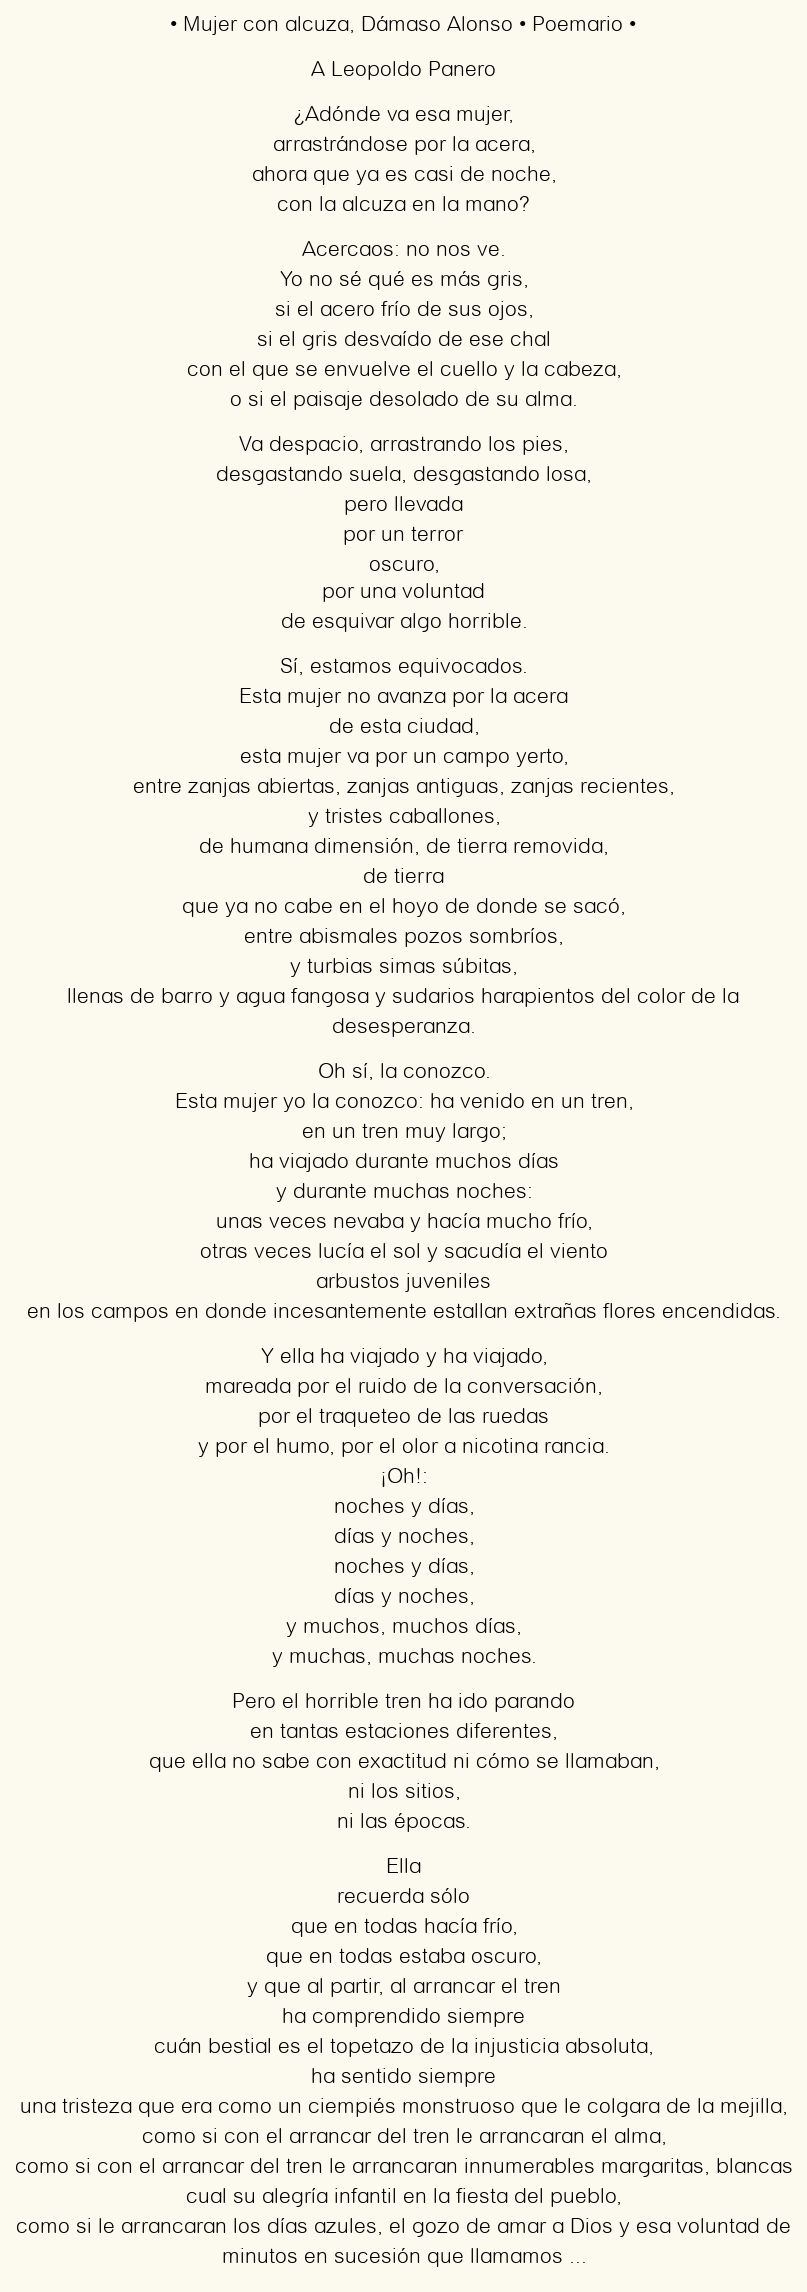 Imagen con el poema Mujer con alcuza, por Dámaso Alonso